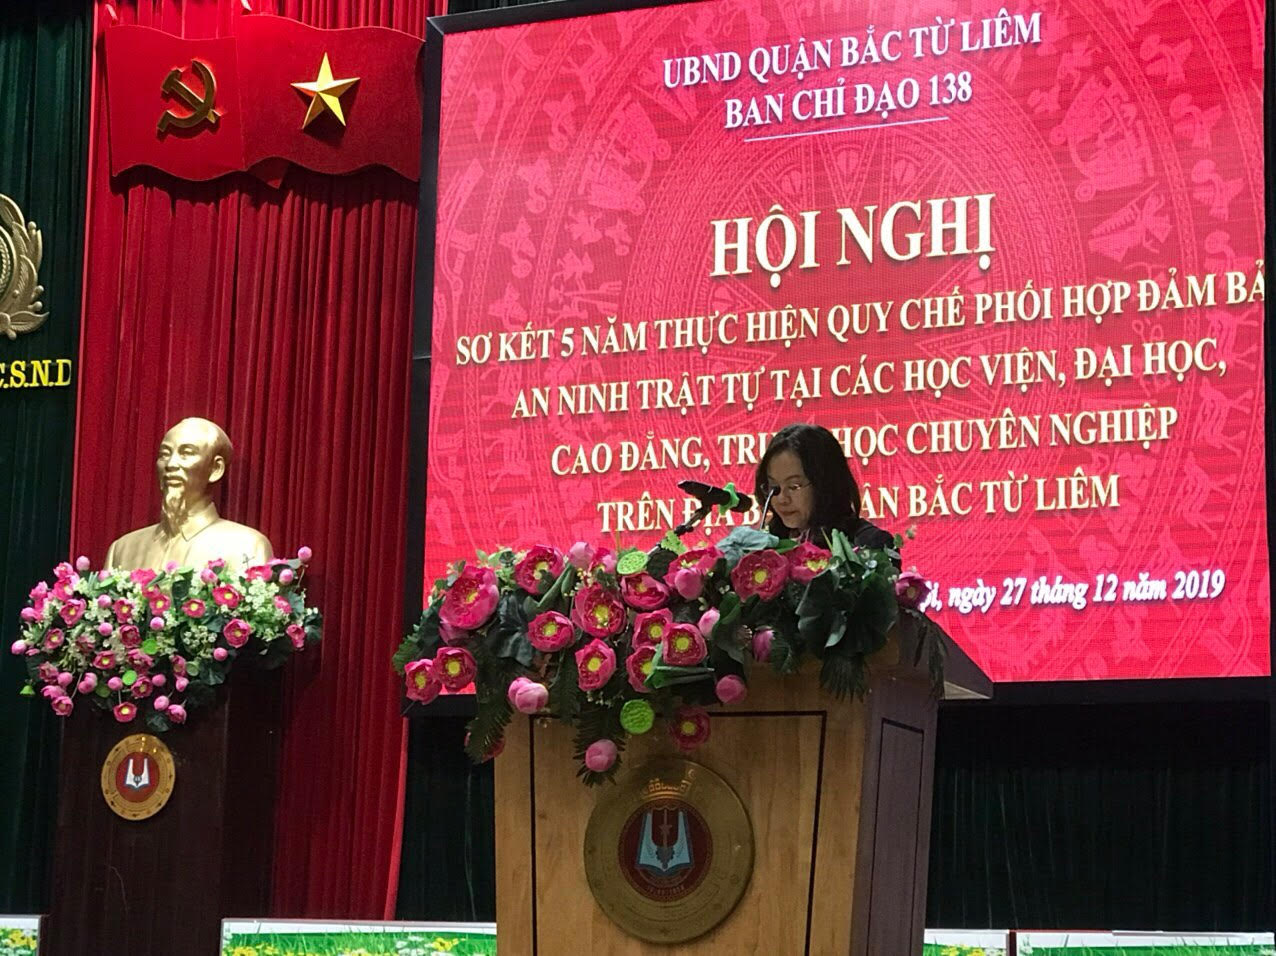 Đồng chí Nguyễn Thị Nắng Mai – Phó Chủ tịch UBND Quận phát biểu tại Hội nghị